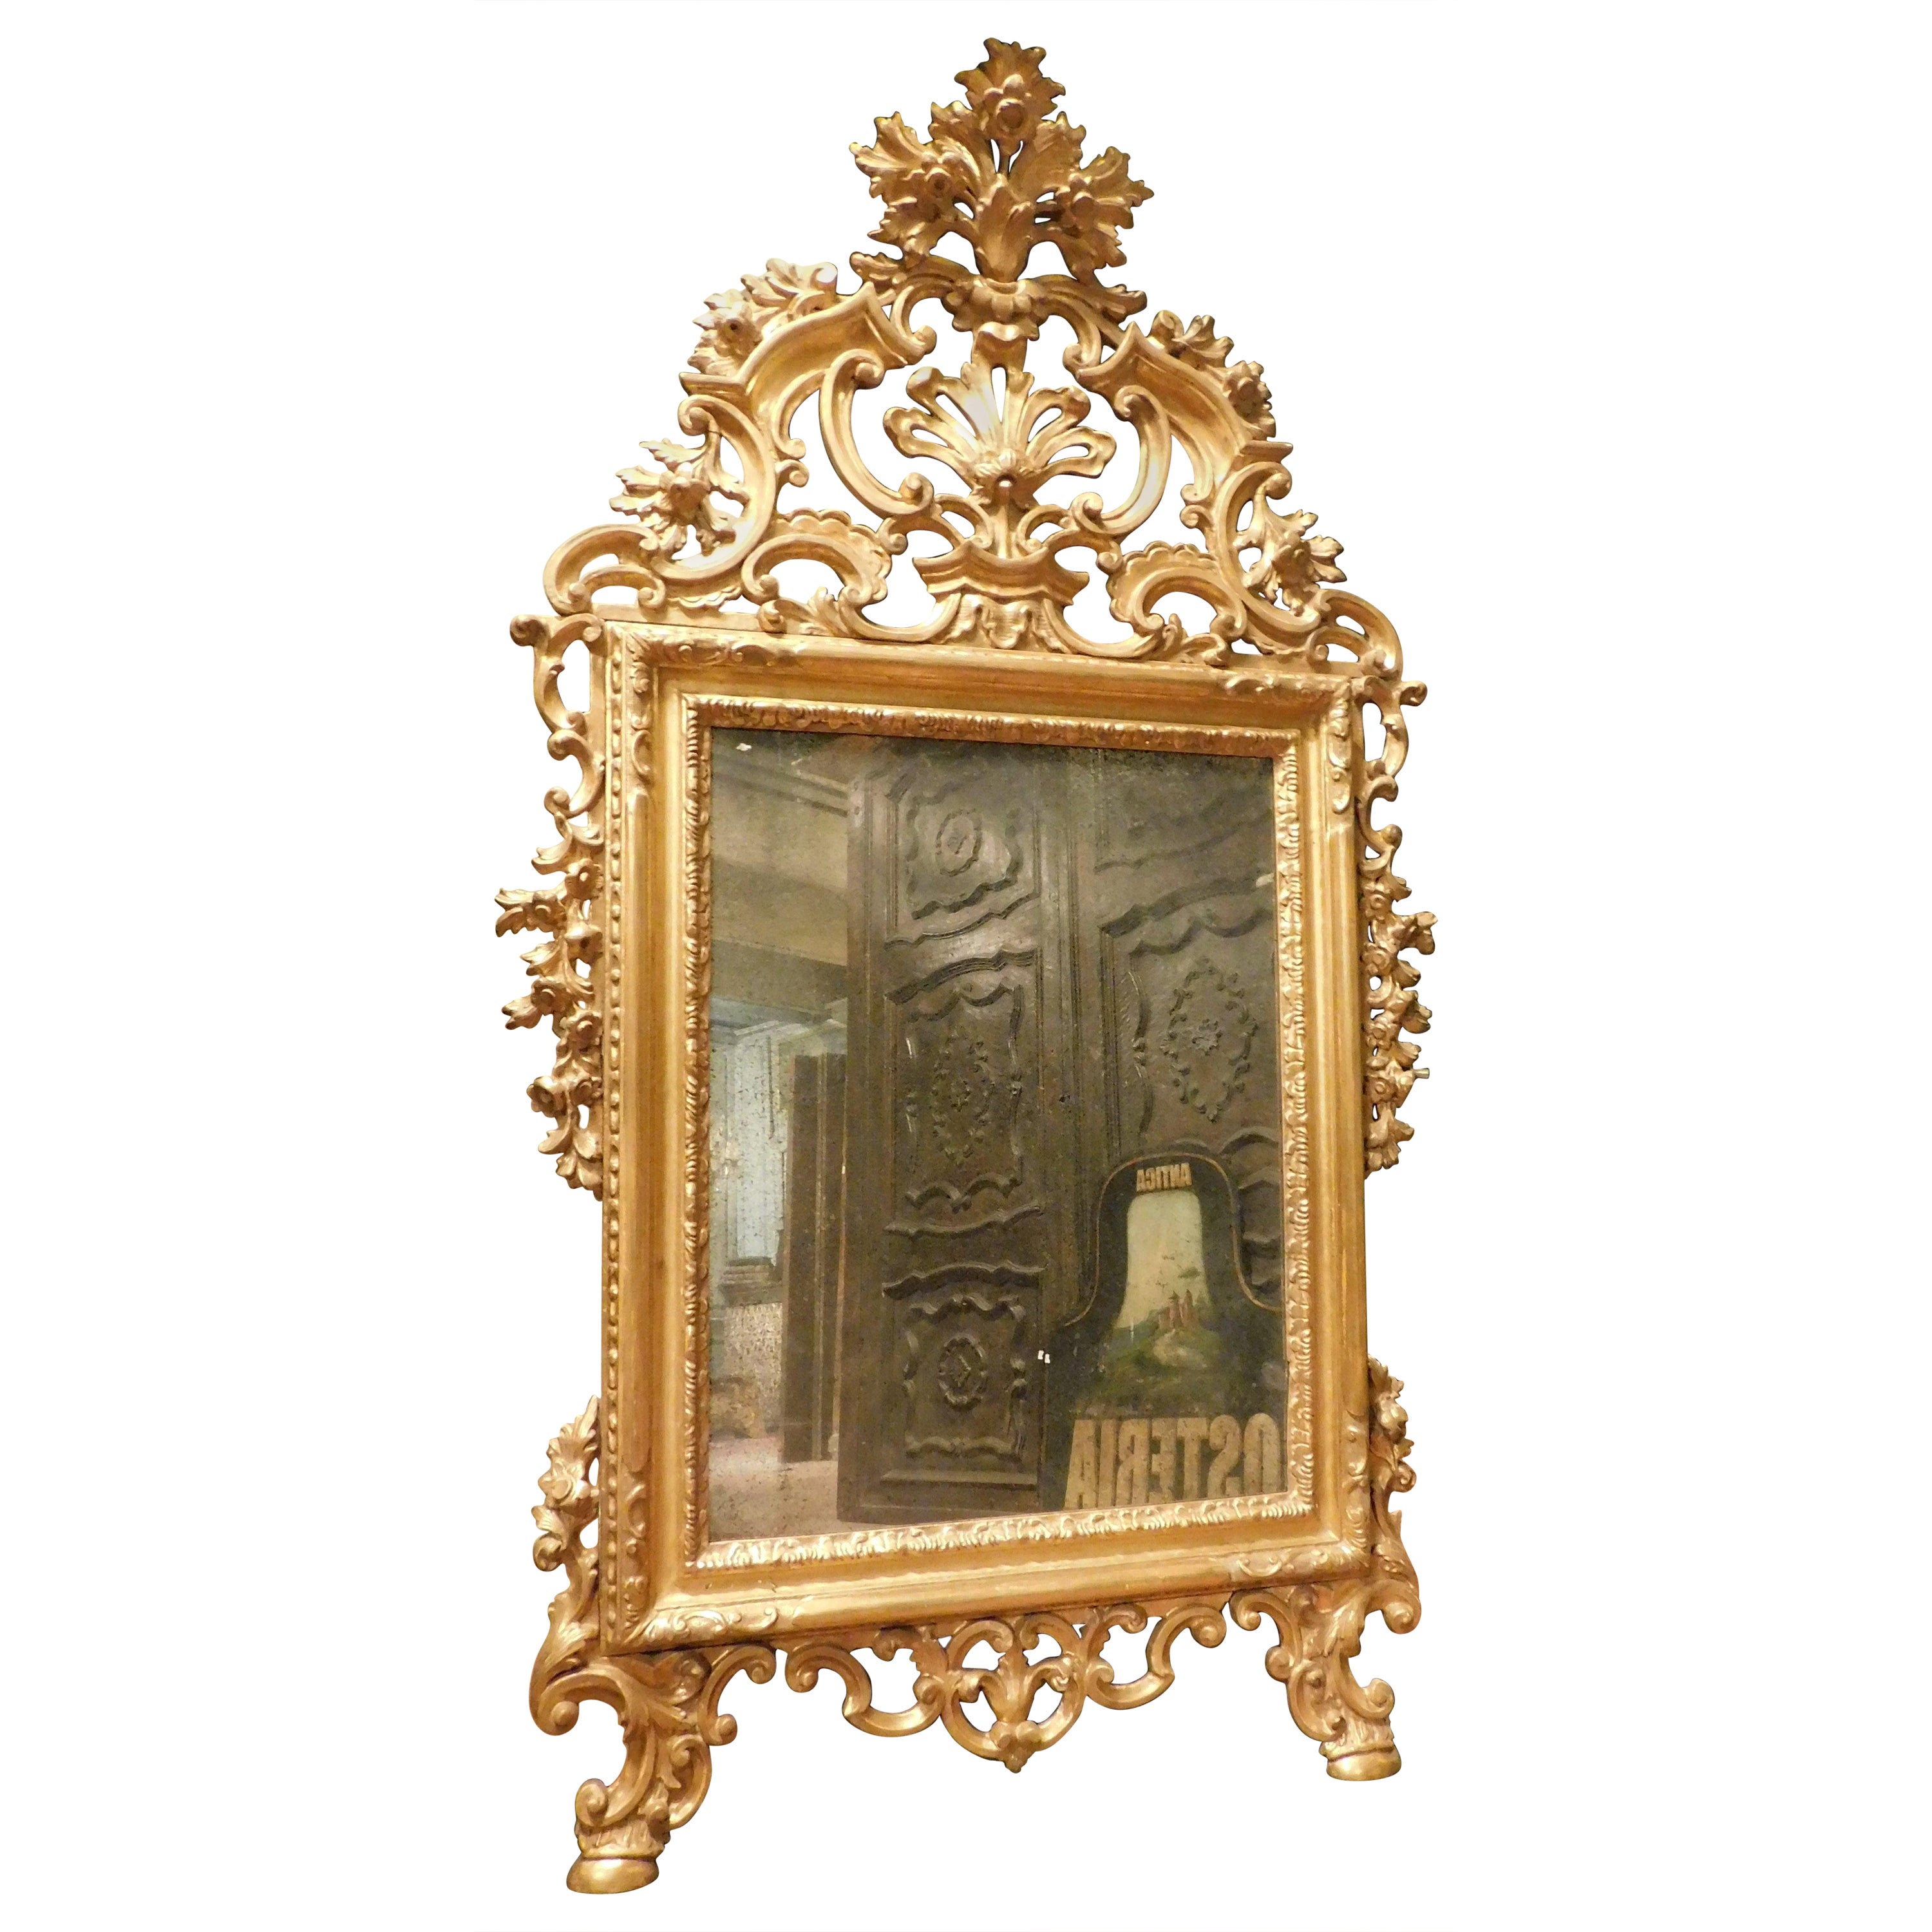 Spiegel in vergoldetem Holz, reich Fries perforiert Voluten, floral und blattreich, '800